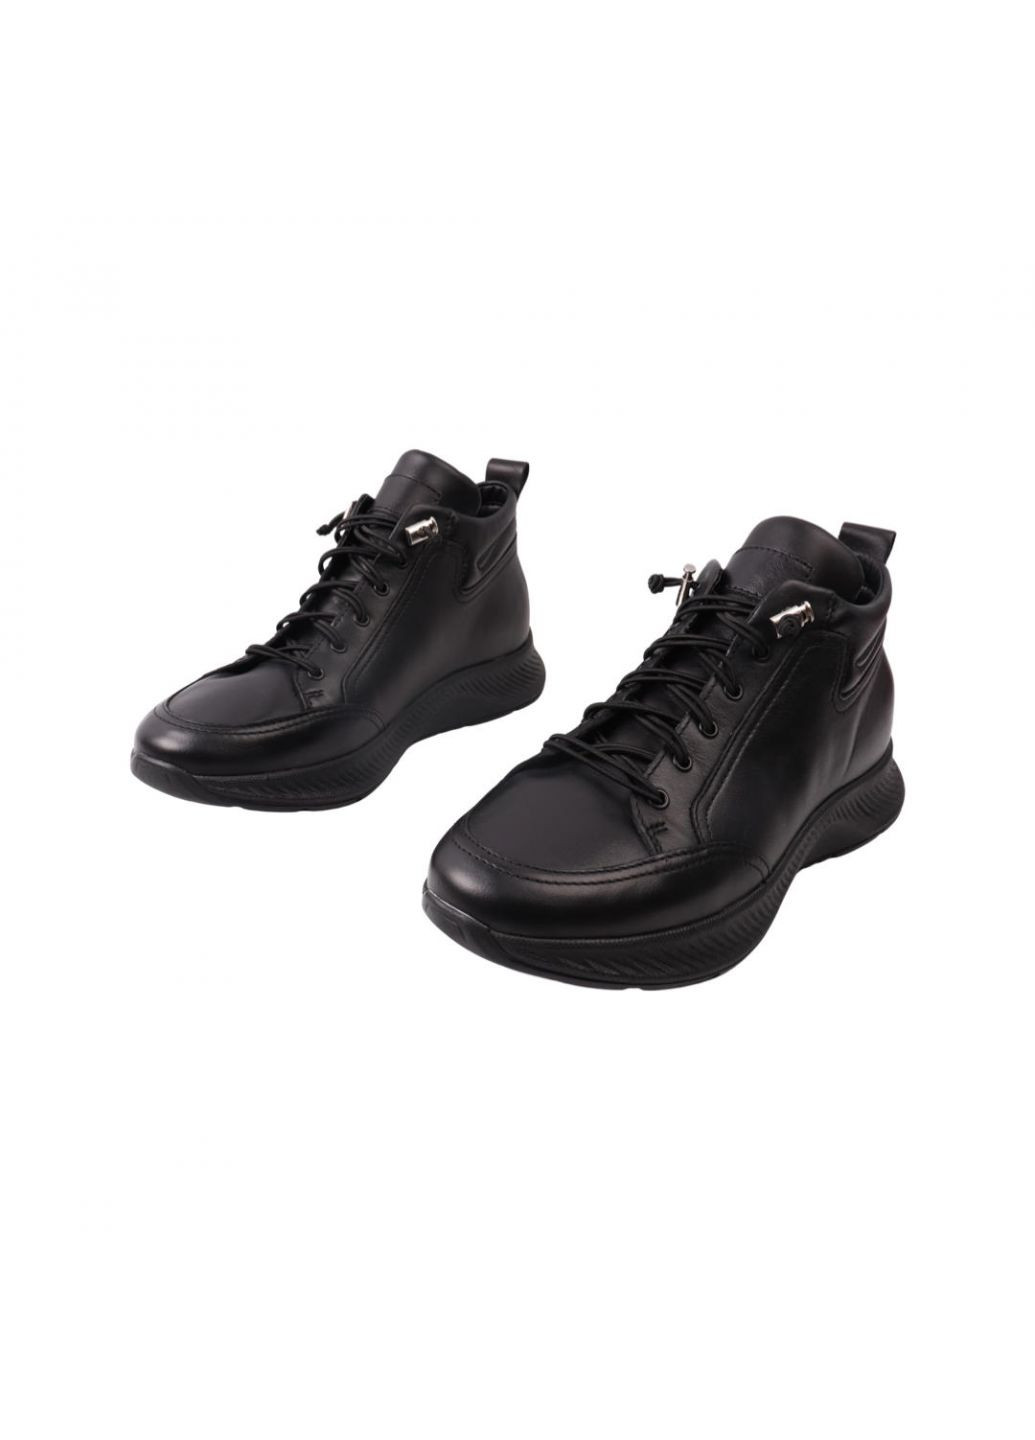 Черные ботинки мужские черные натуральная кожа Vadrus